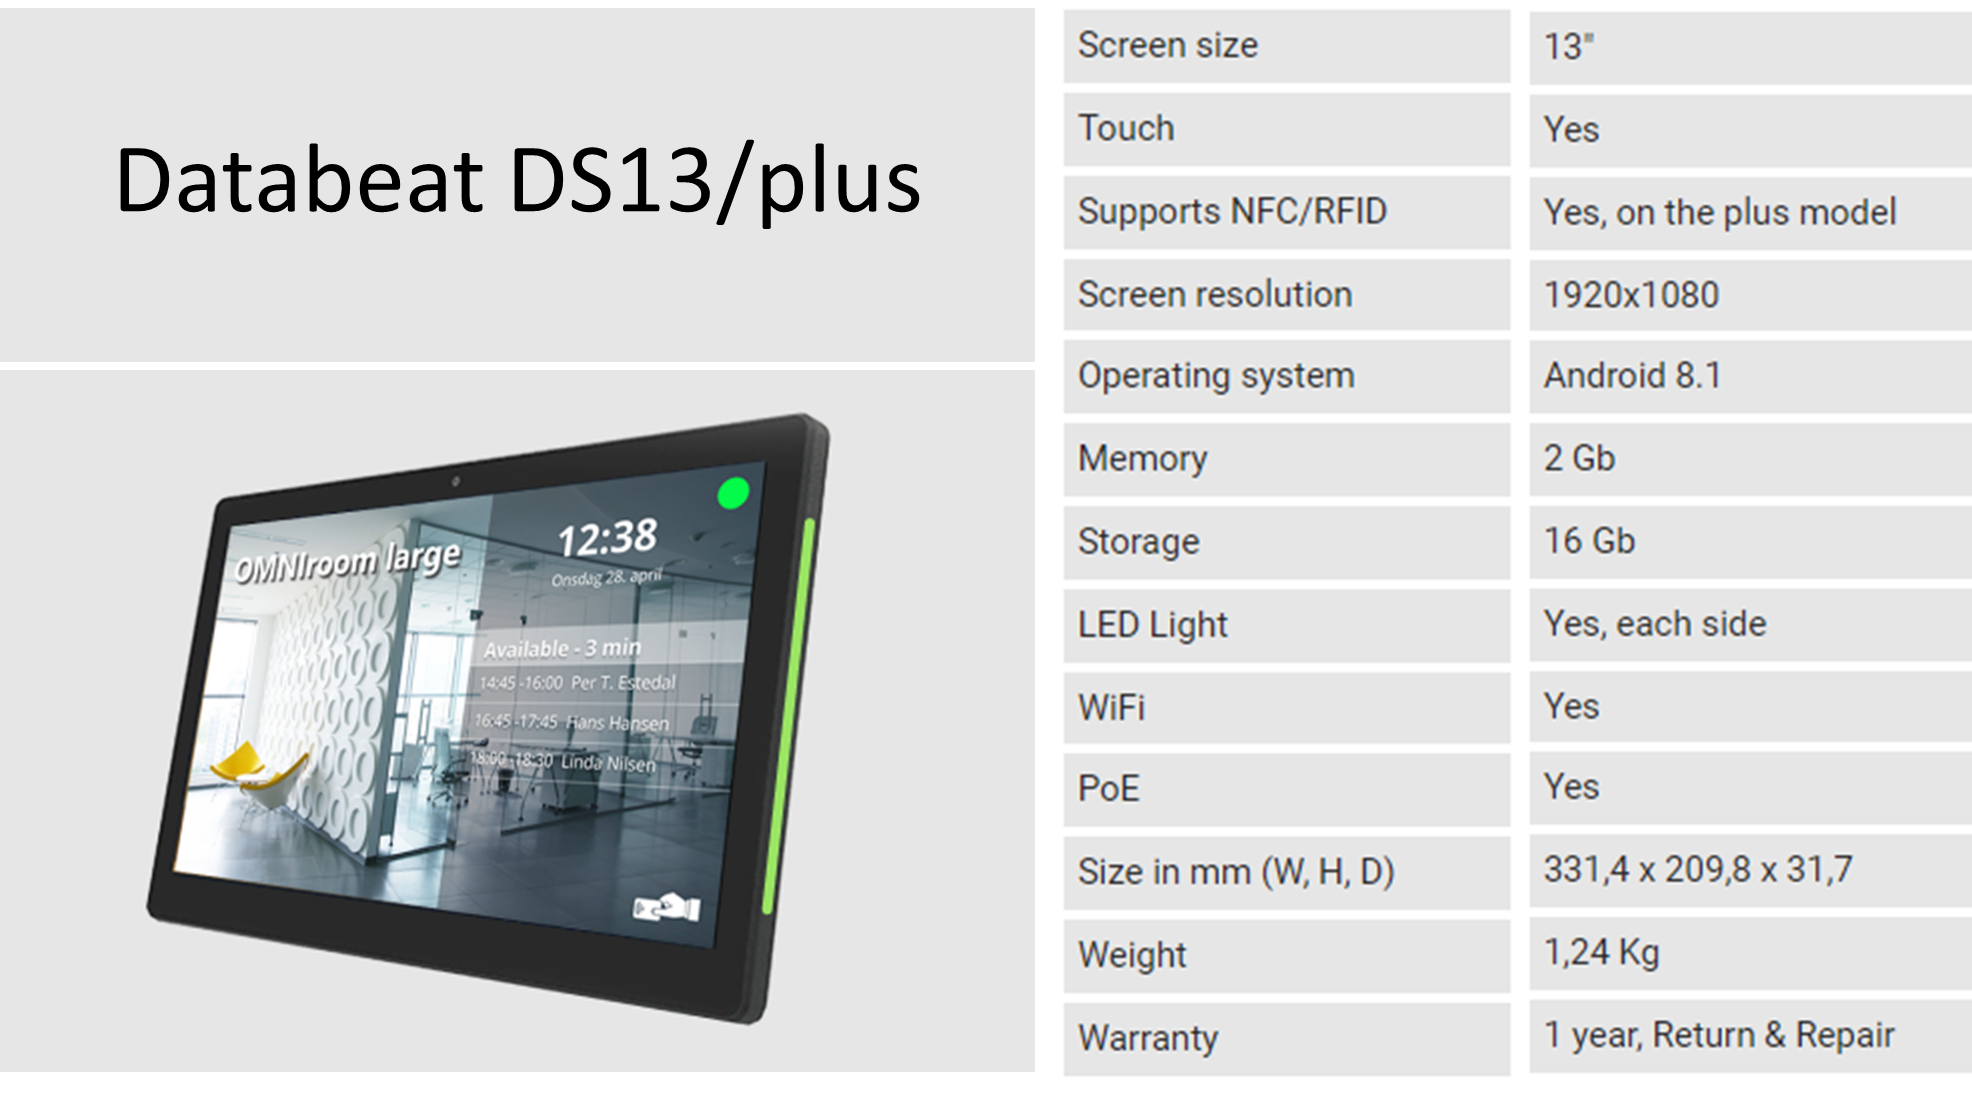 Databeat DS13/plus specs